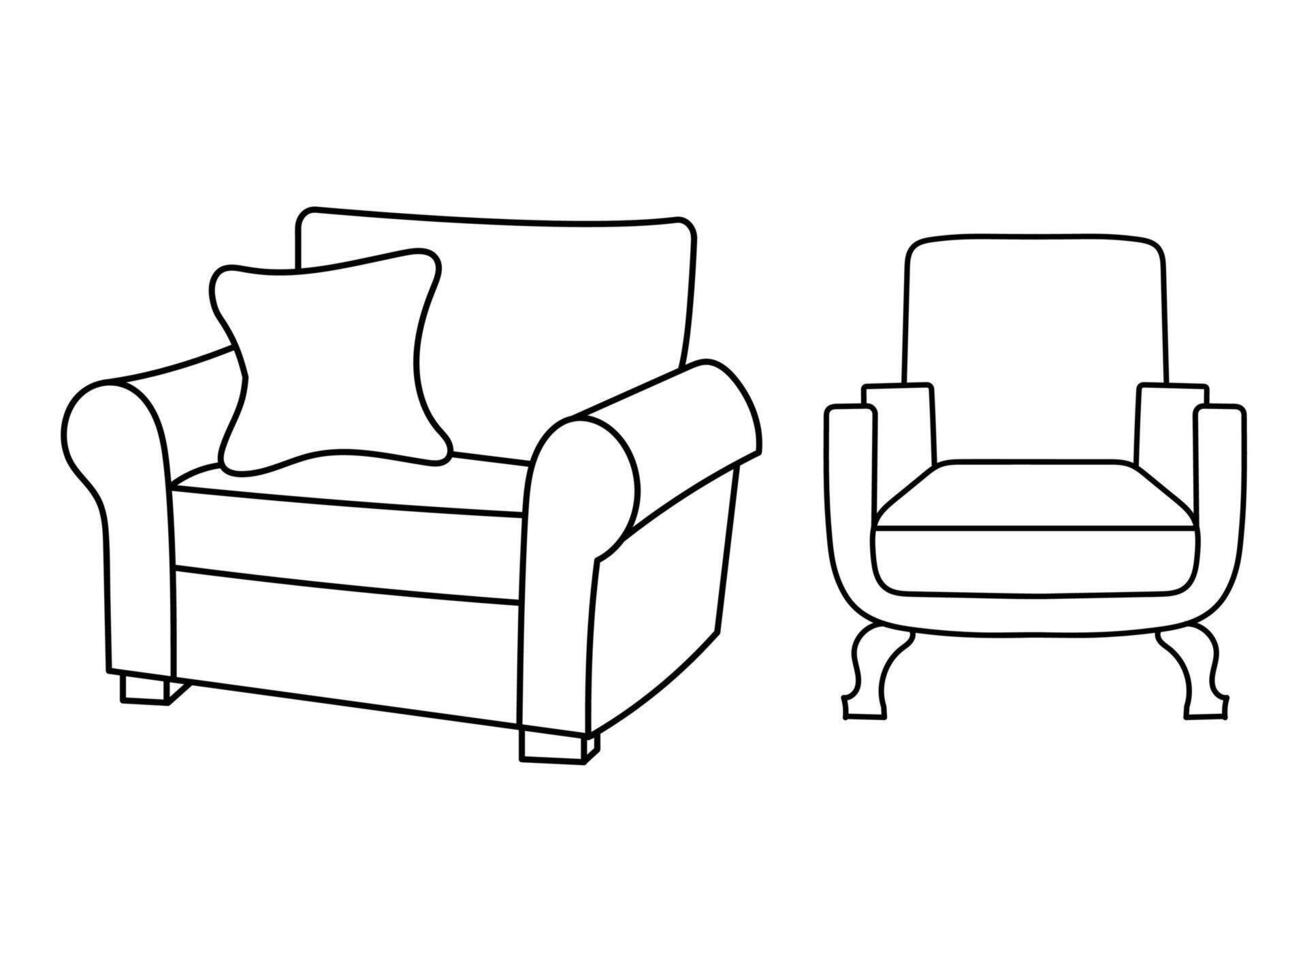 moderno mobília poltrona lar, contínuo linha desenhando executivo escritório cadeira conceito, sofá cadeira vetor ilustração